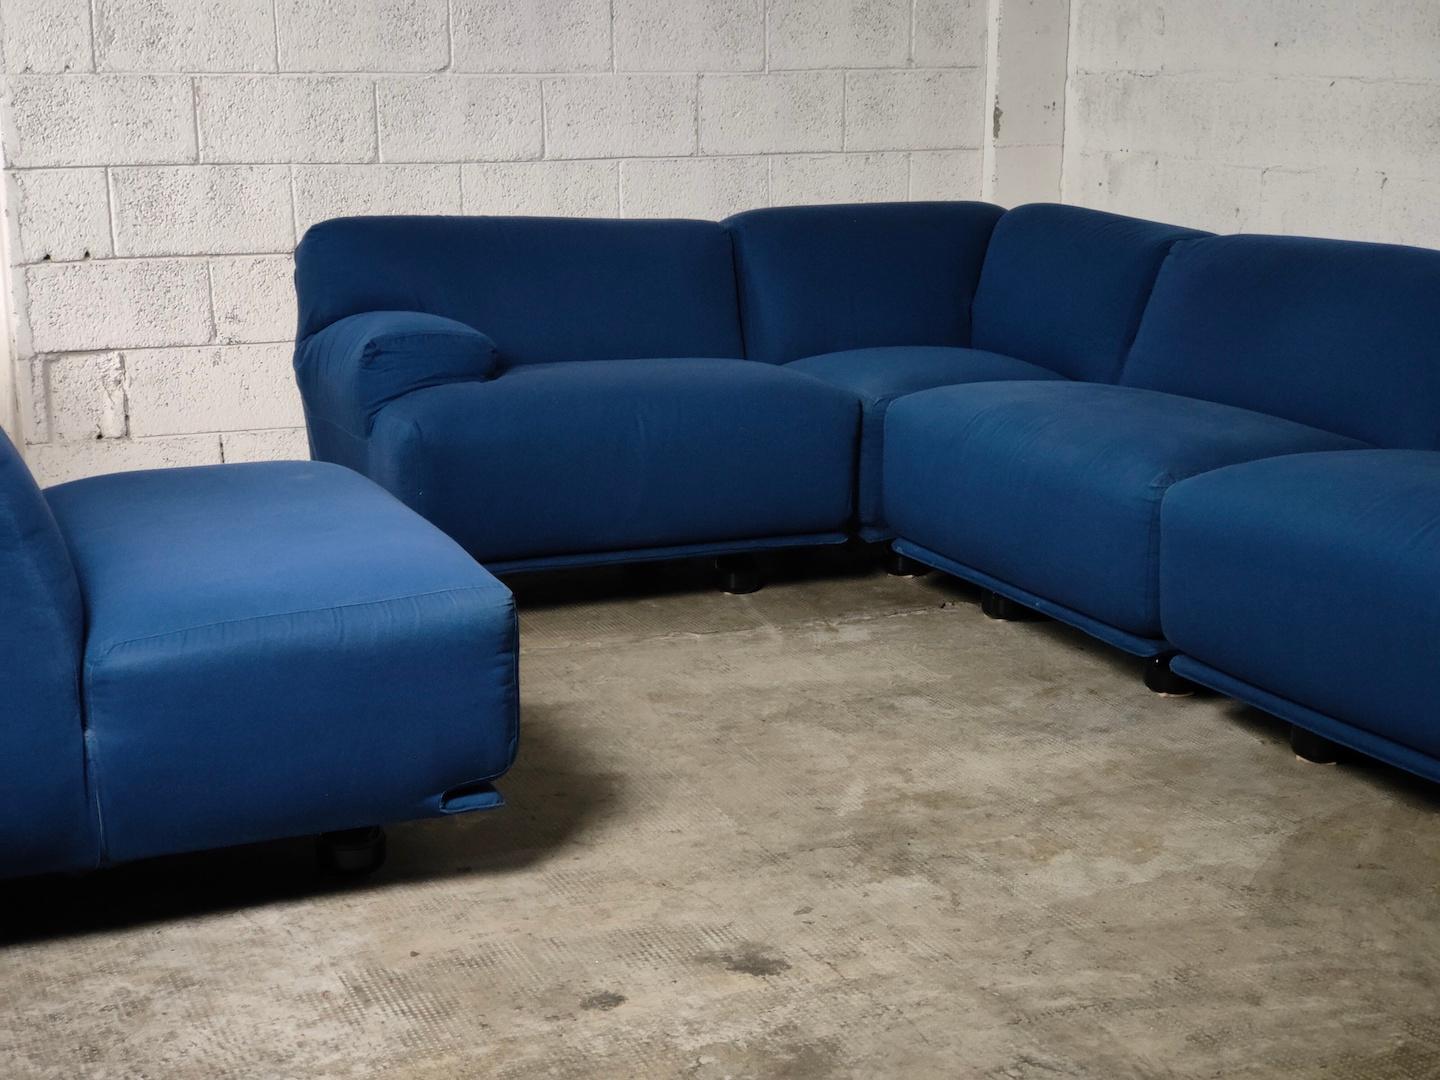 Fiandra modular sofa by Vico Magistretti for Cassina 70s For Sale 1